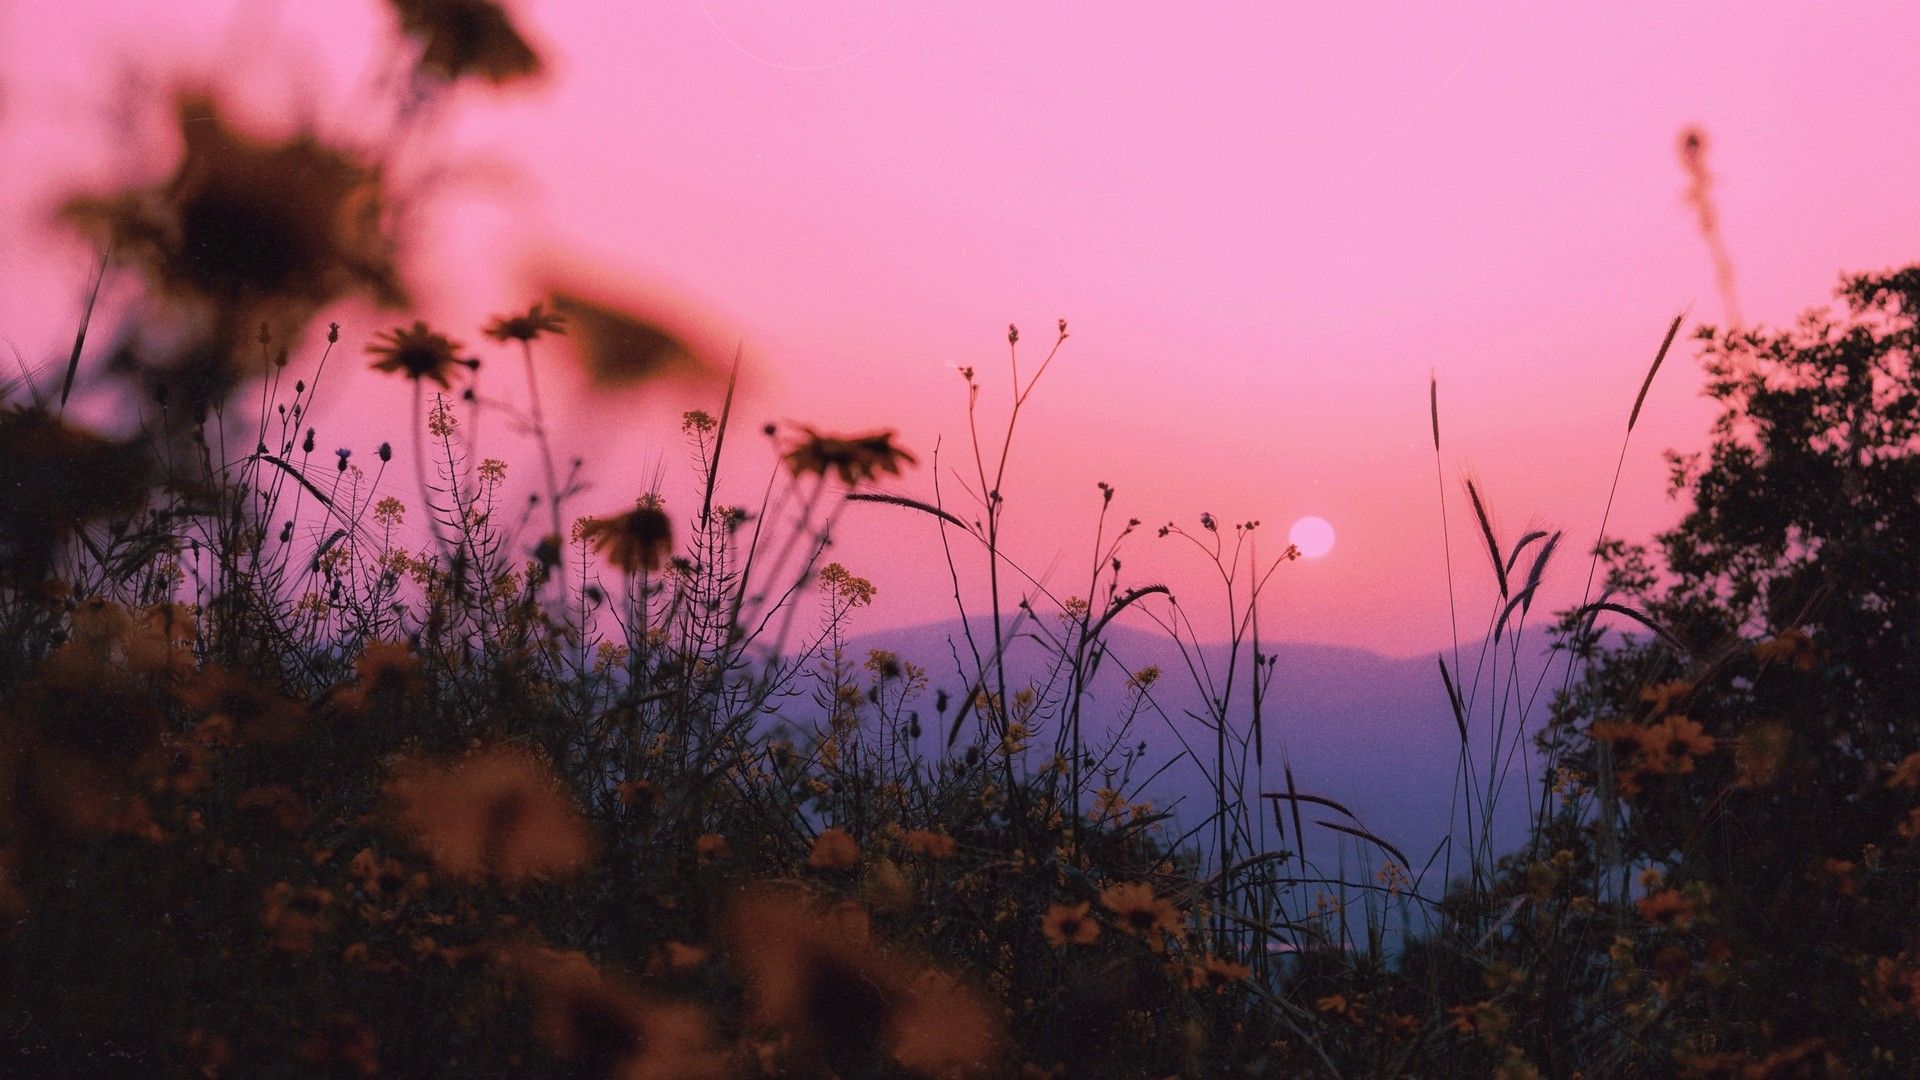  Landschaften Hintergrundbild 1920x1080. Landschaft, Gras, Sonne, Berge, Sonnenuntergang, Horizont. Bild, Foto, Desktop Hintergrund